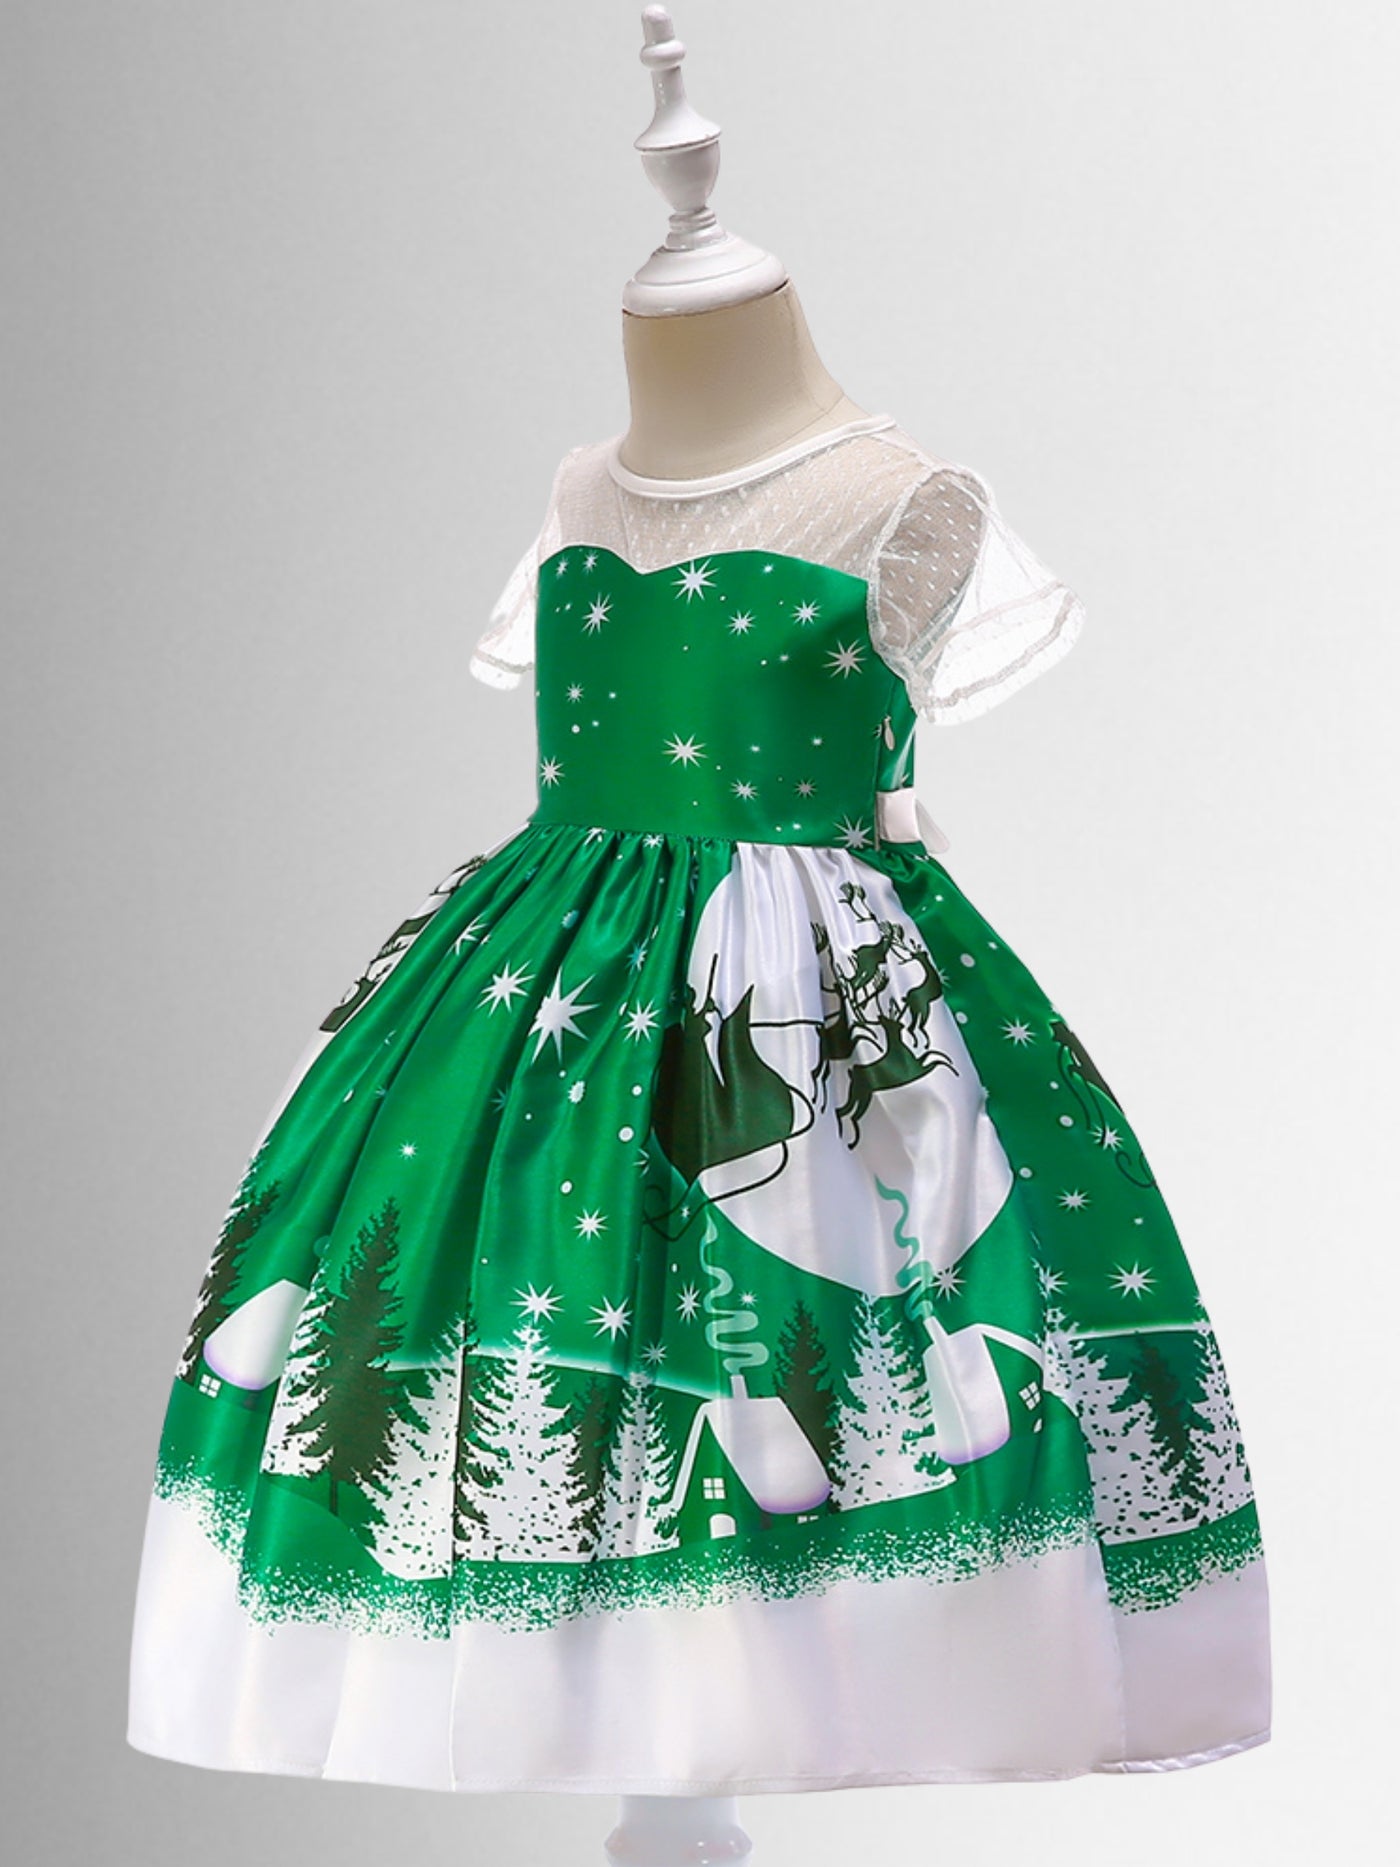 Girls Christmas Dresses | Santa's Sleigh Holiday Print Princess Dress 